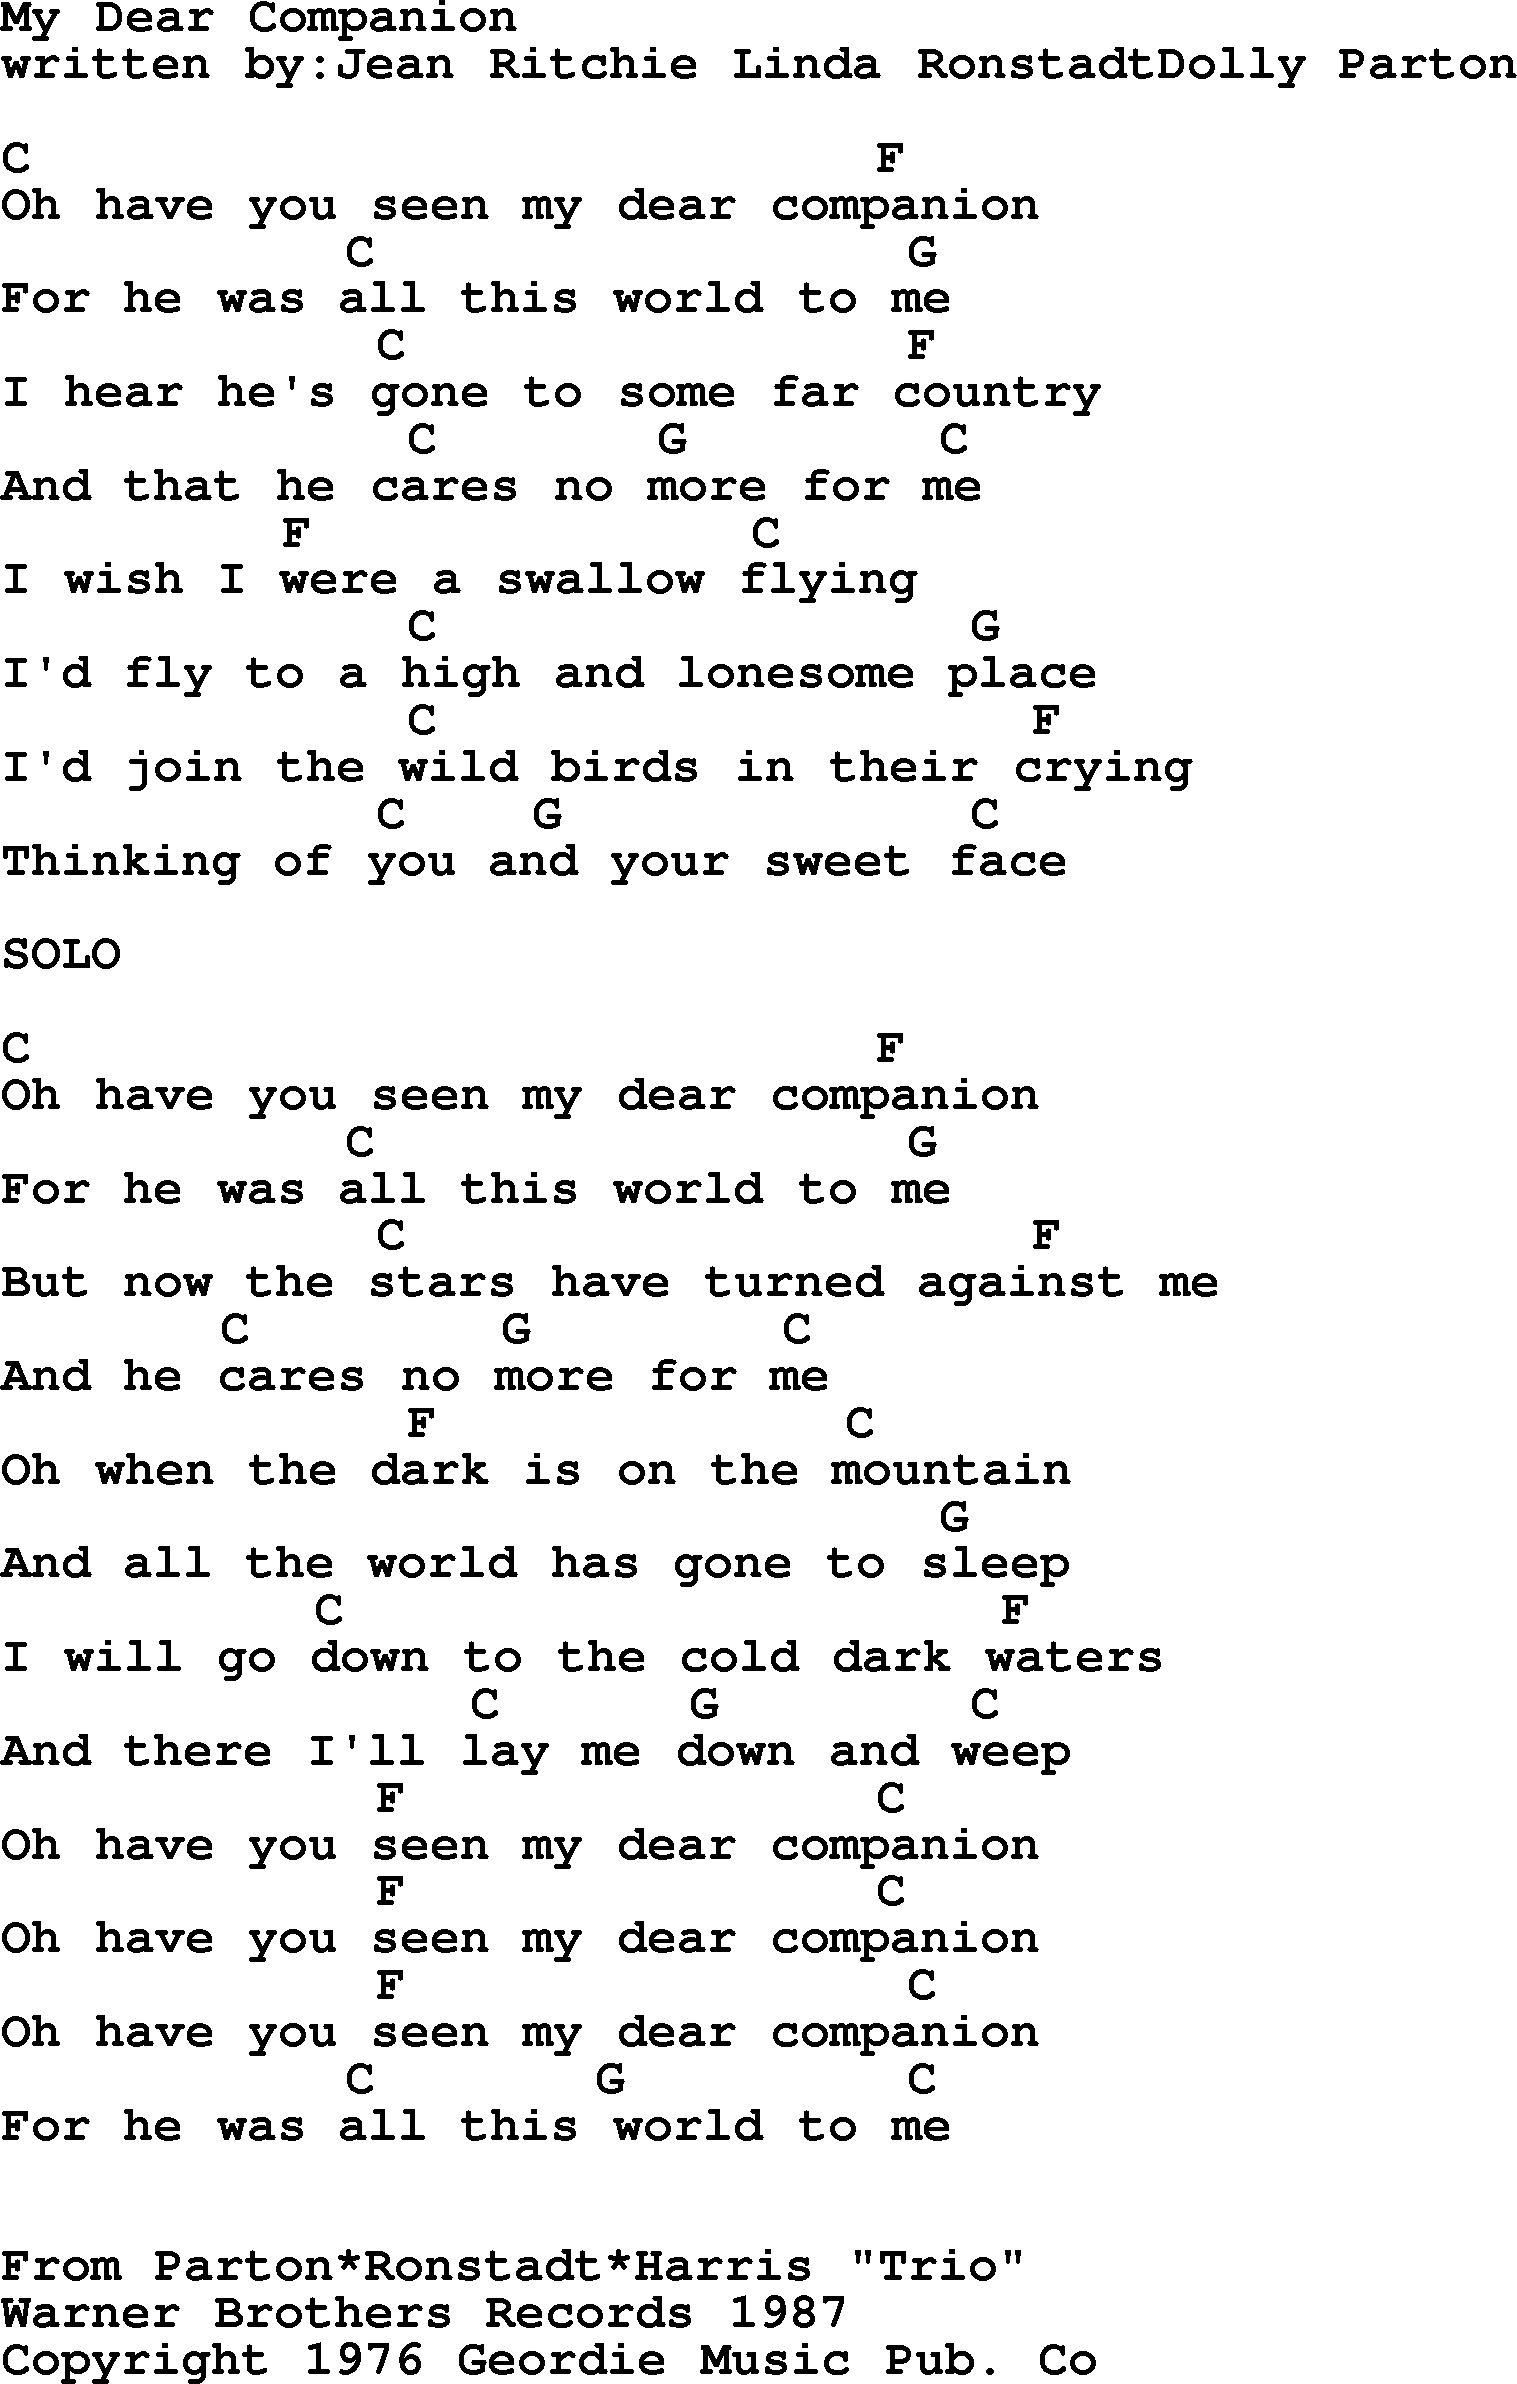 Emmylou Harris song: My Dear Companion lyrics and chords